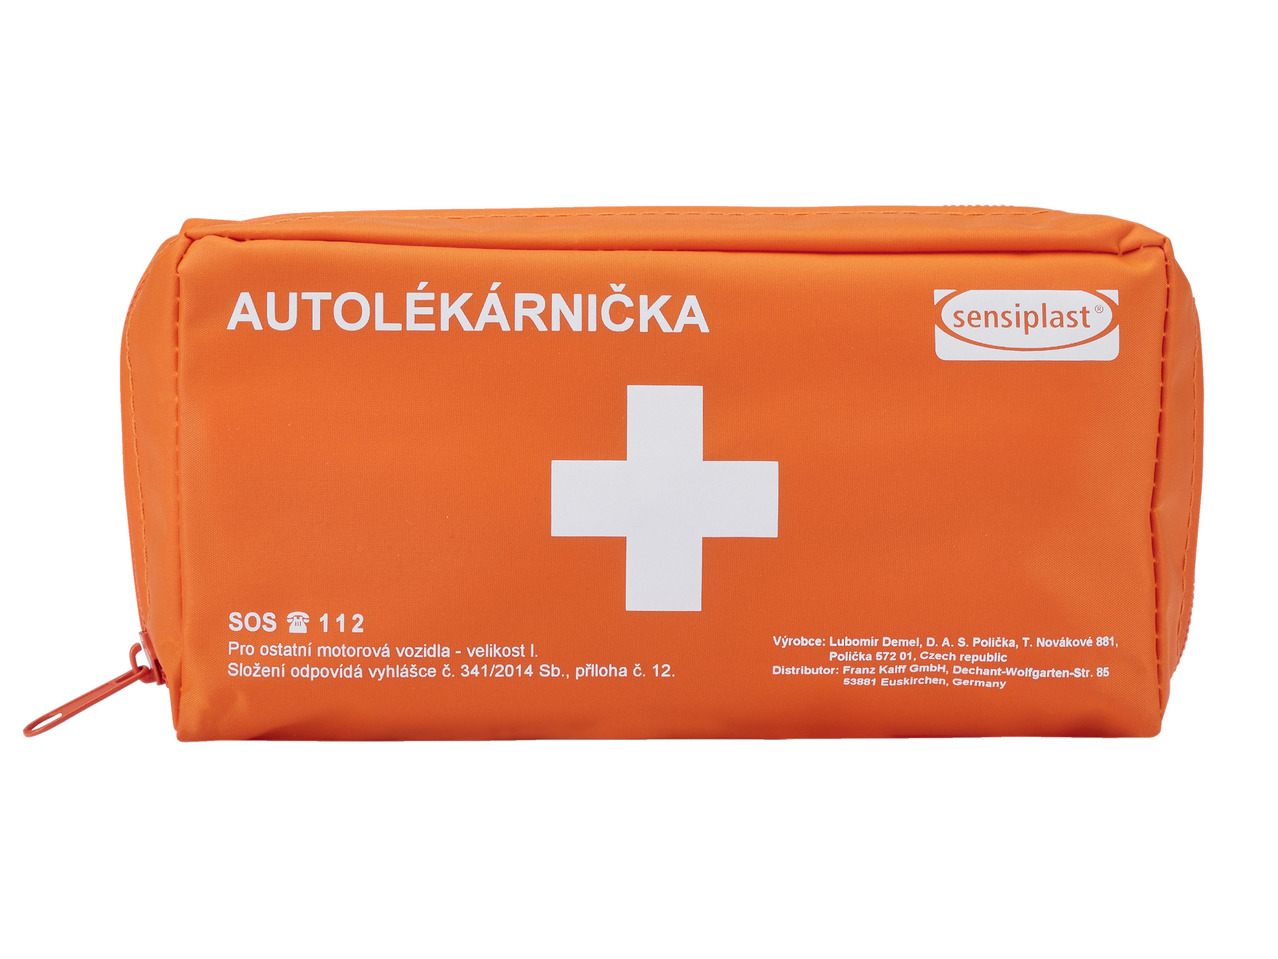 Car First Aid Kit